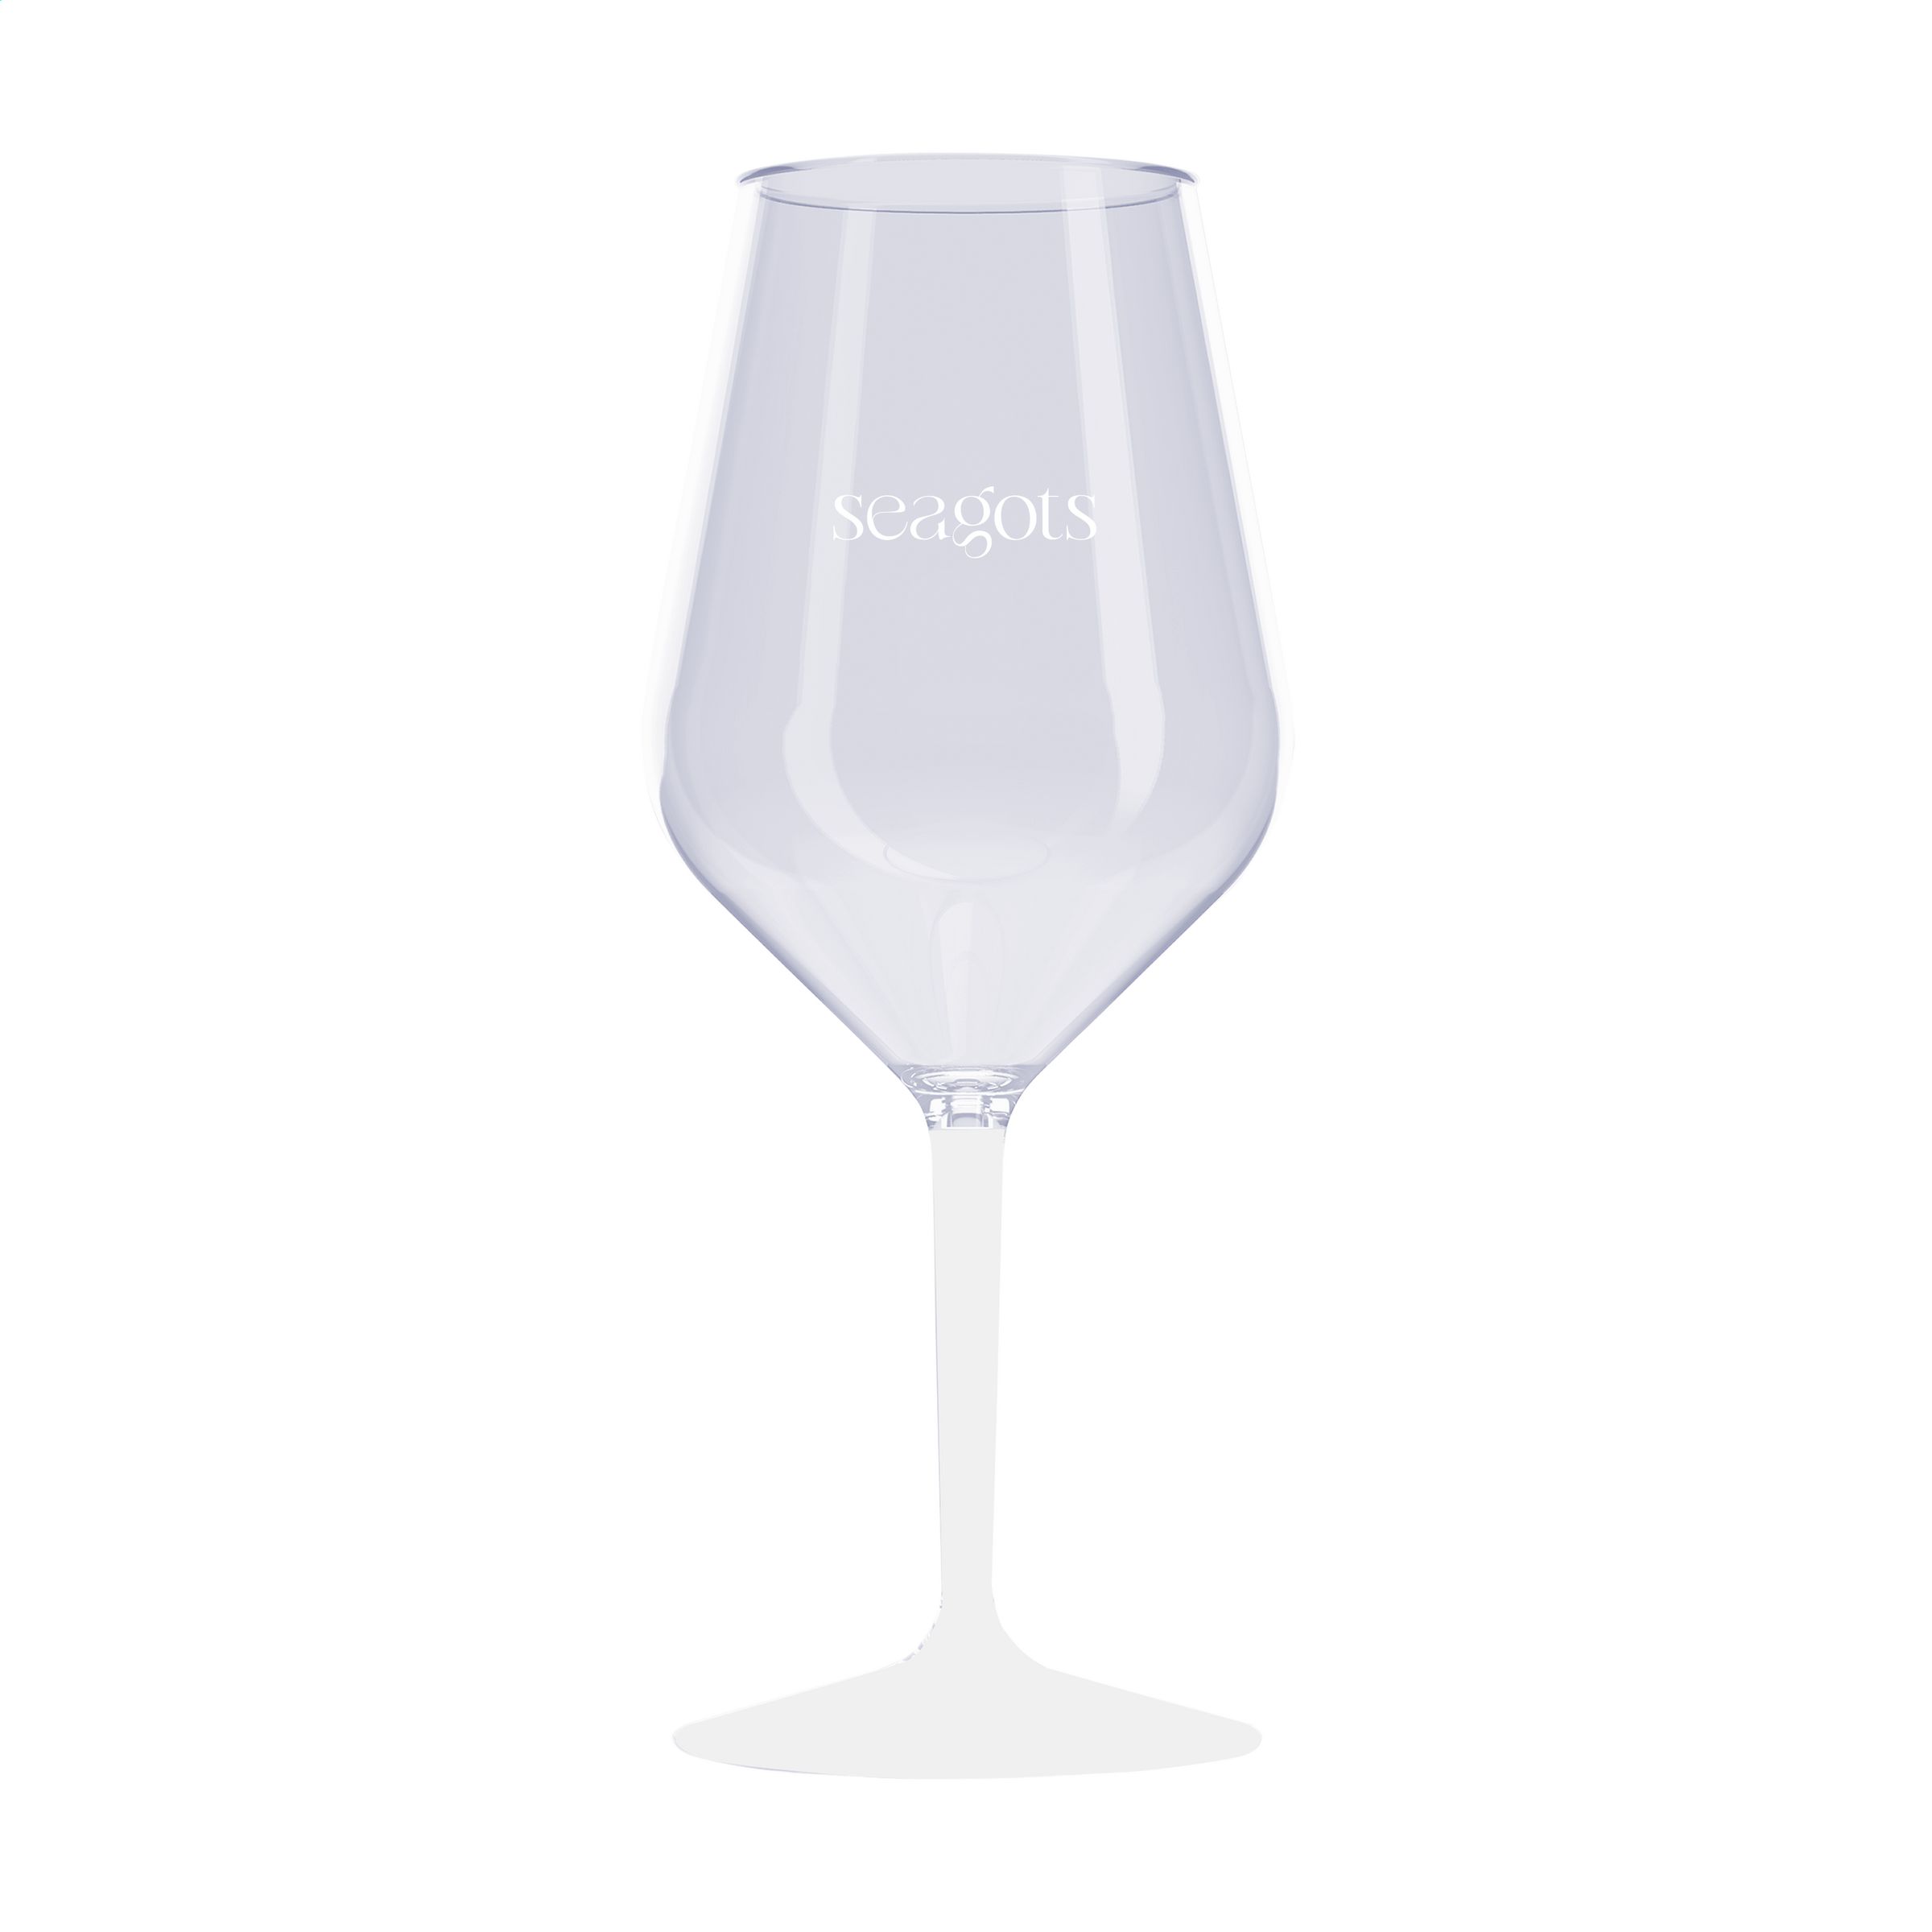 HappyGlass Bicchiere di Vino Infrangibile - Monterosso al Mare